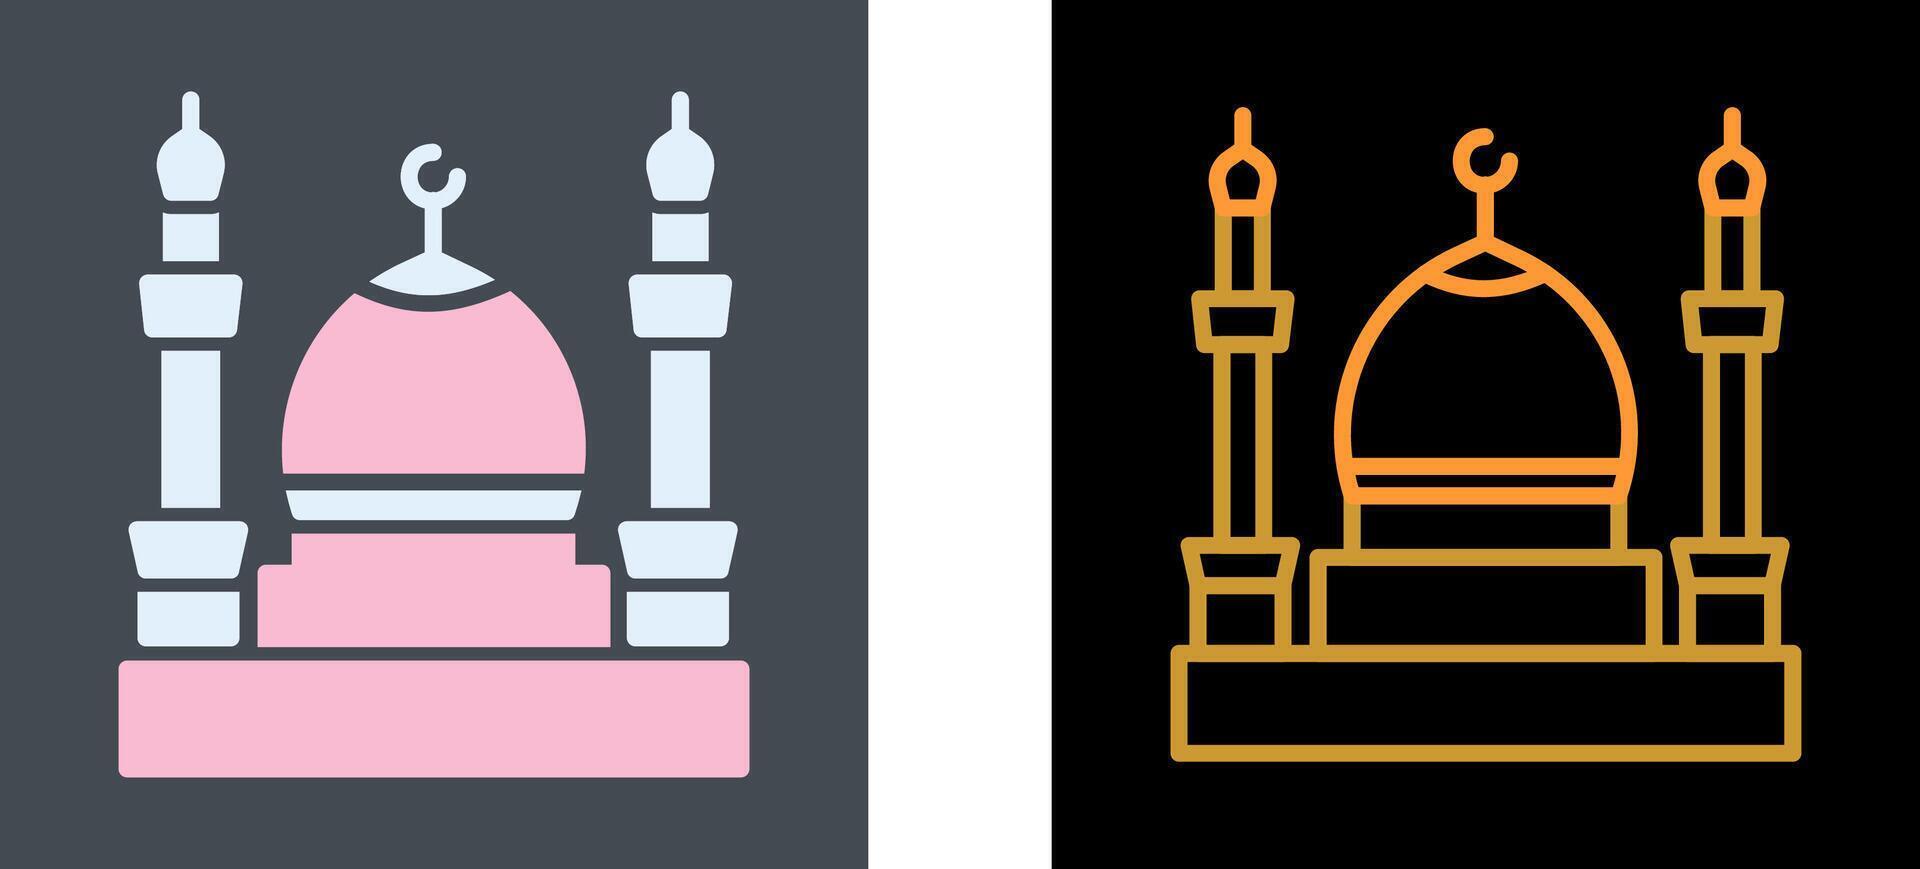 moské ikon design vektor